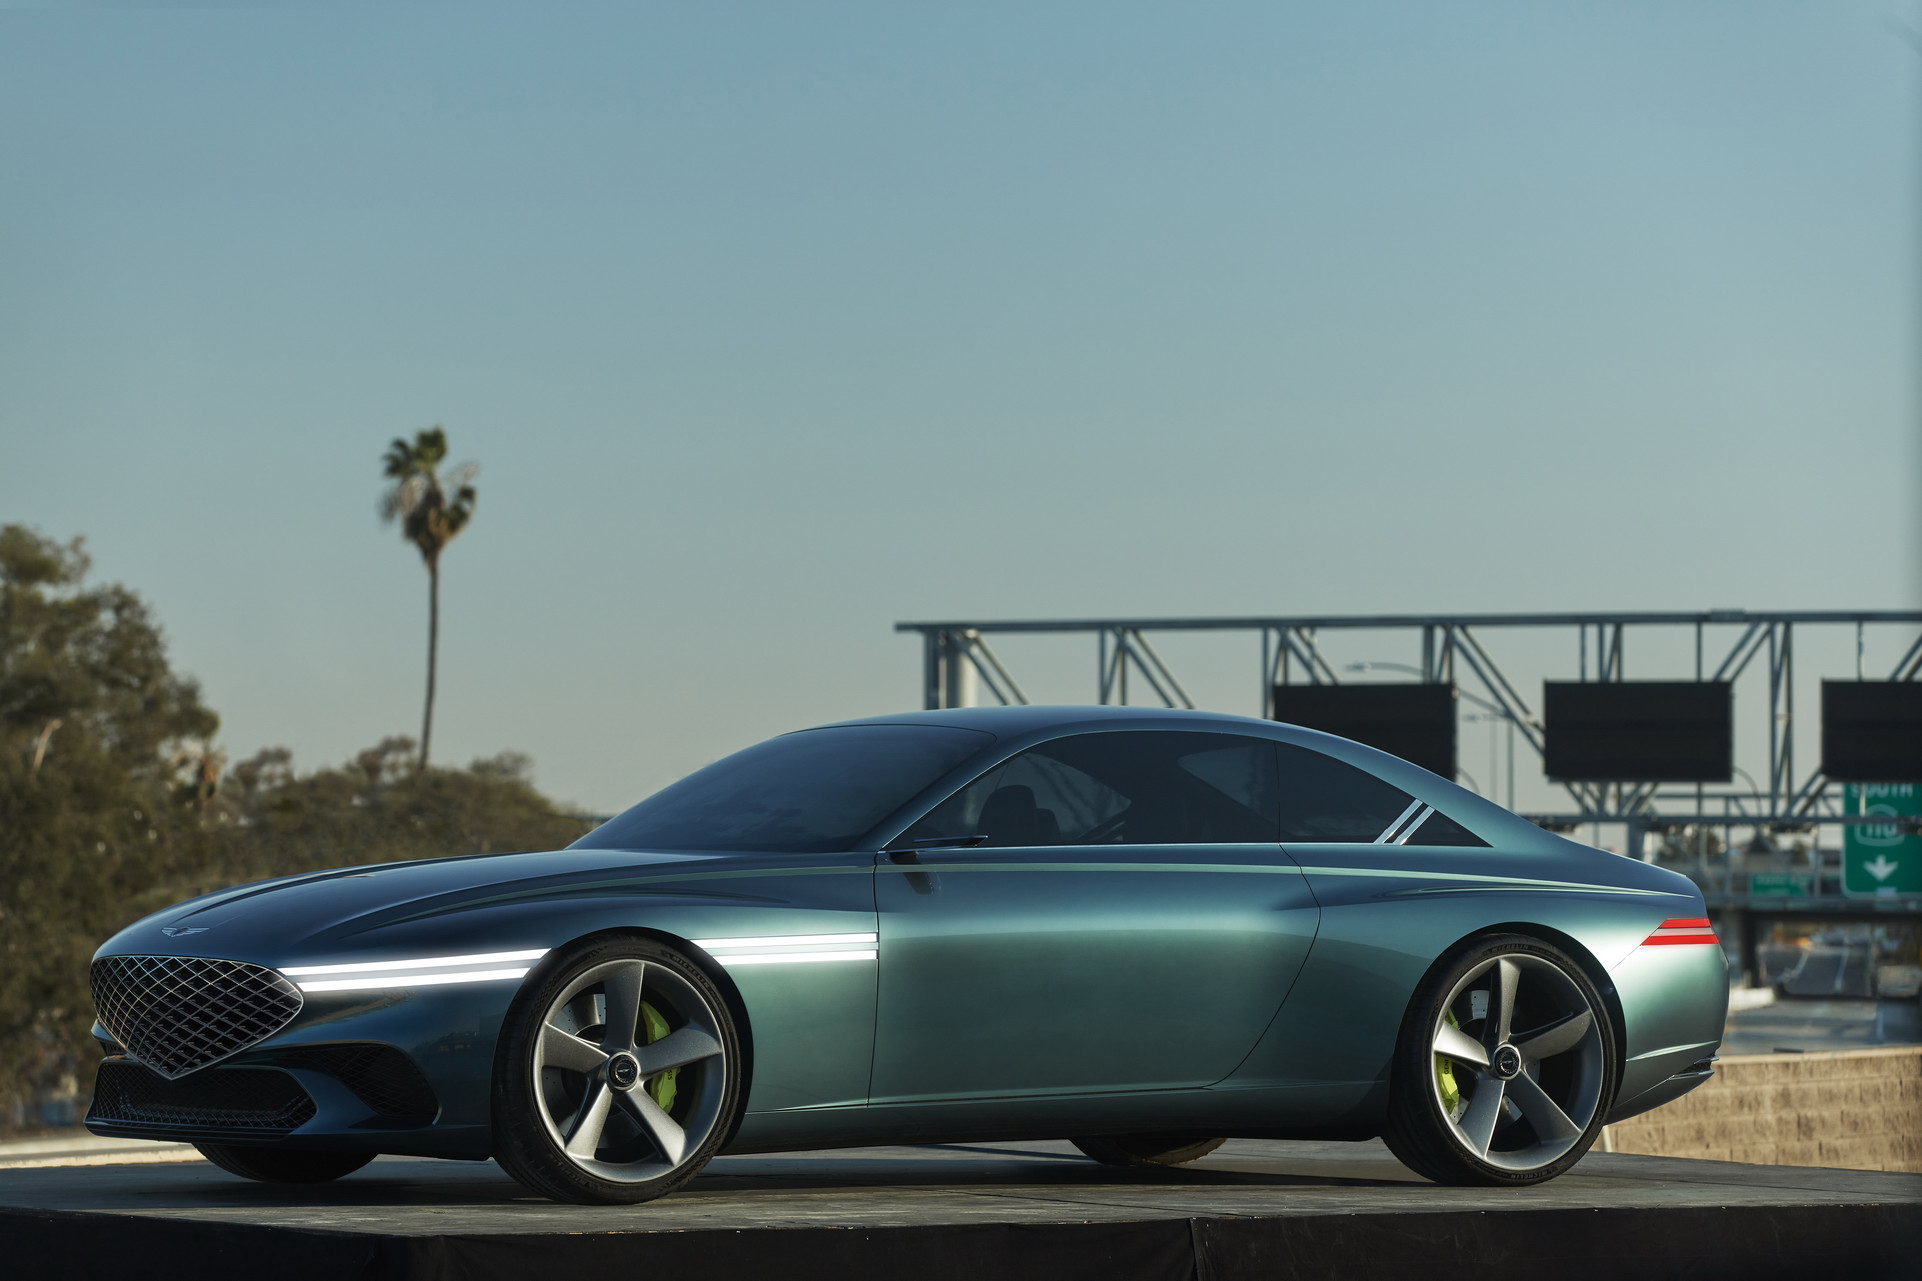 Ra mắt Genesis X Coupe Concept - Xe sang Hàn ngày càng đẹp lên trông thấy - Ảnh 5.